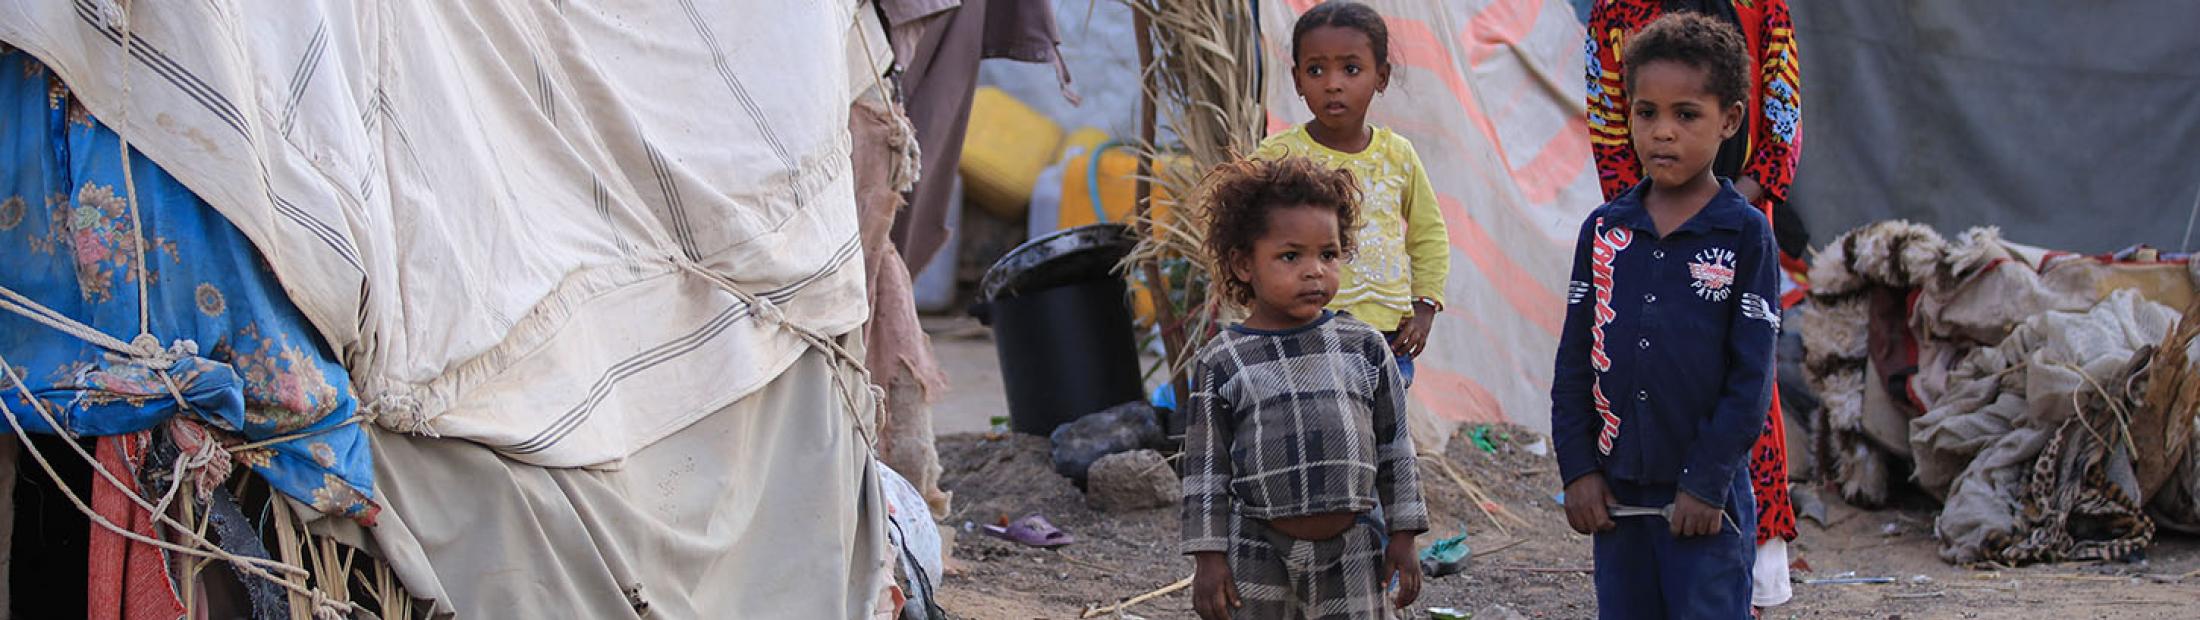 Yemen, donde las enfermedades y el hambre matan más que las bombas